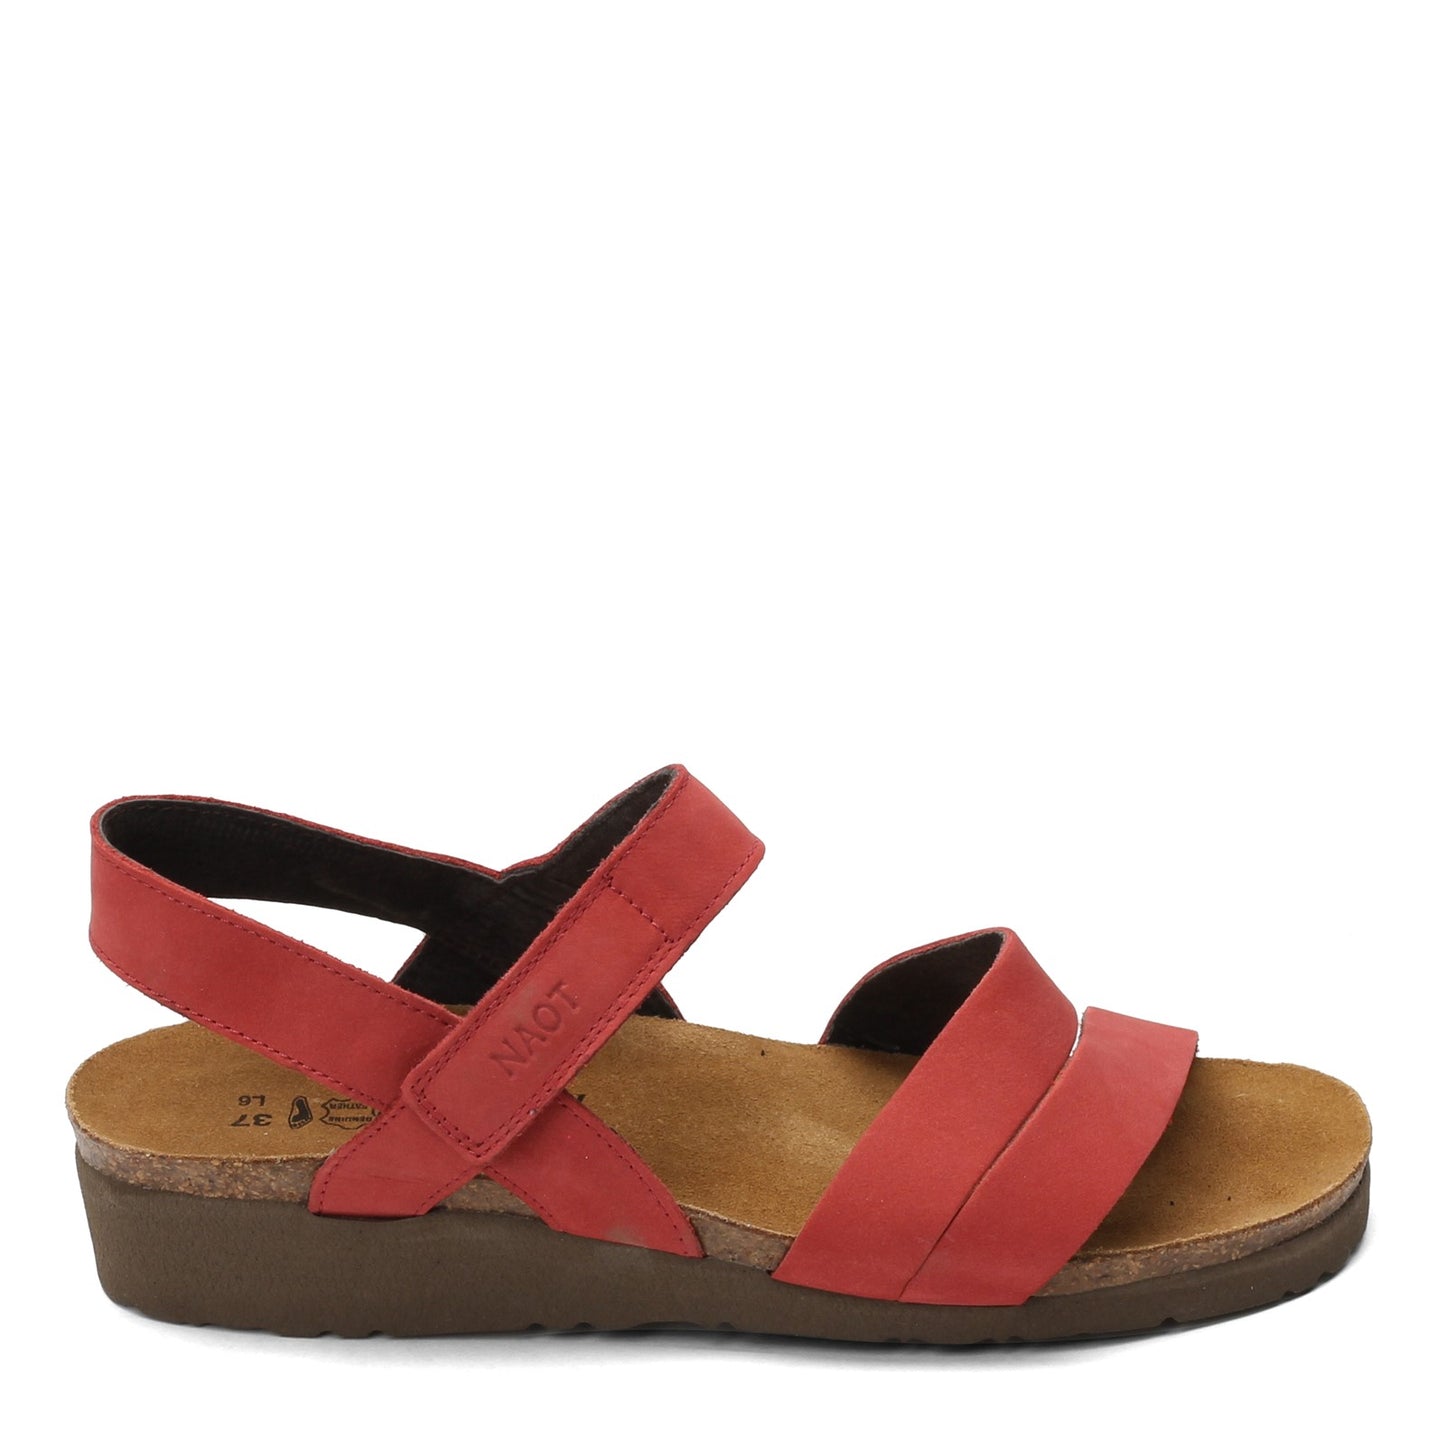 Peltz Shoes  Women's Naot Kayla Sandal BRICK 7806-C20